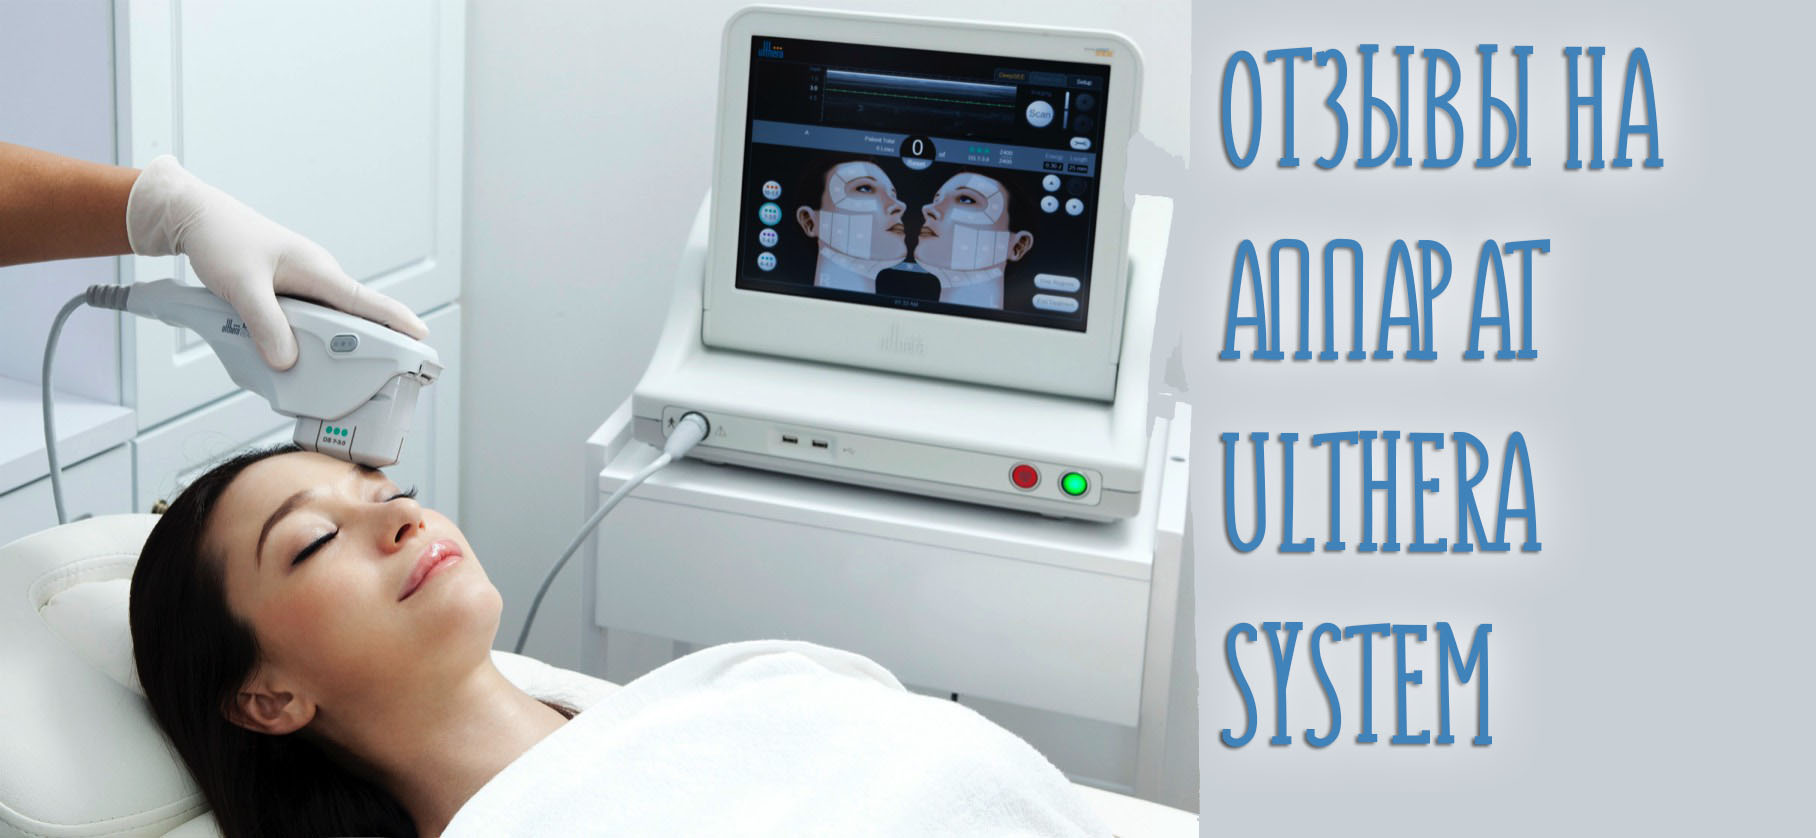 Отзывы врачей косметологов на аппарат Ulthera System SMAS для лифтинга и клиентов